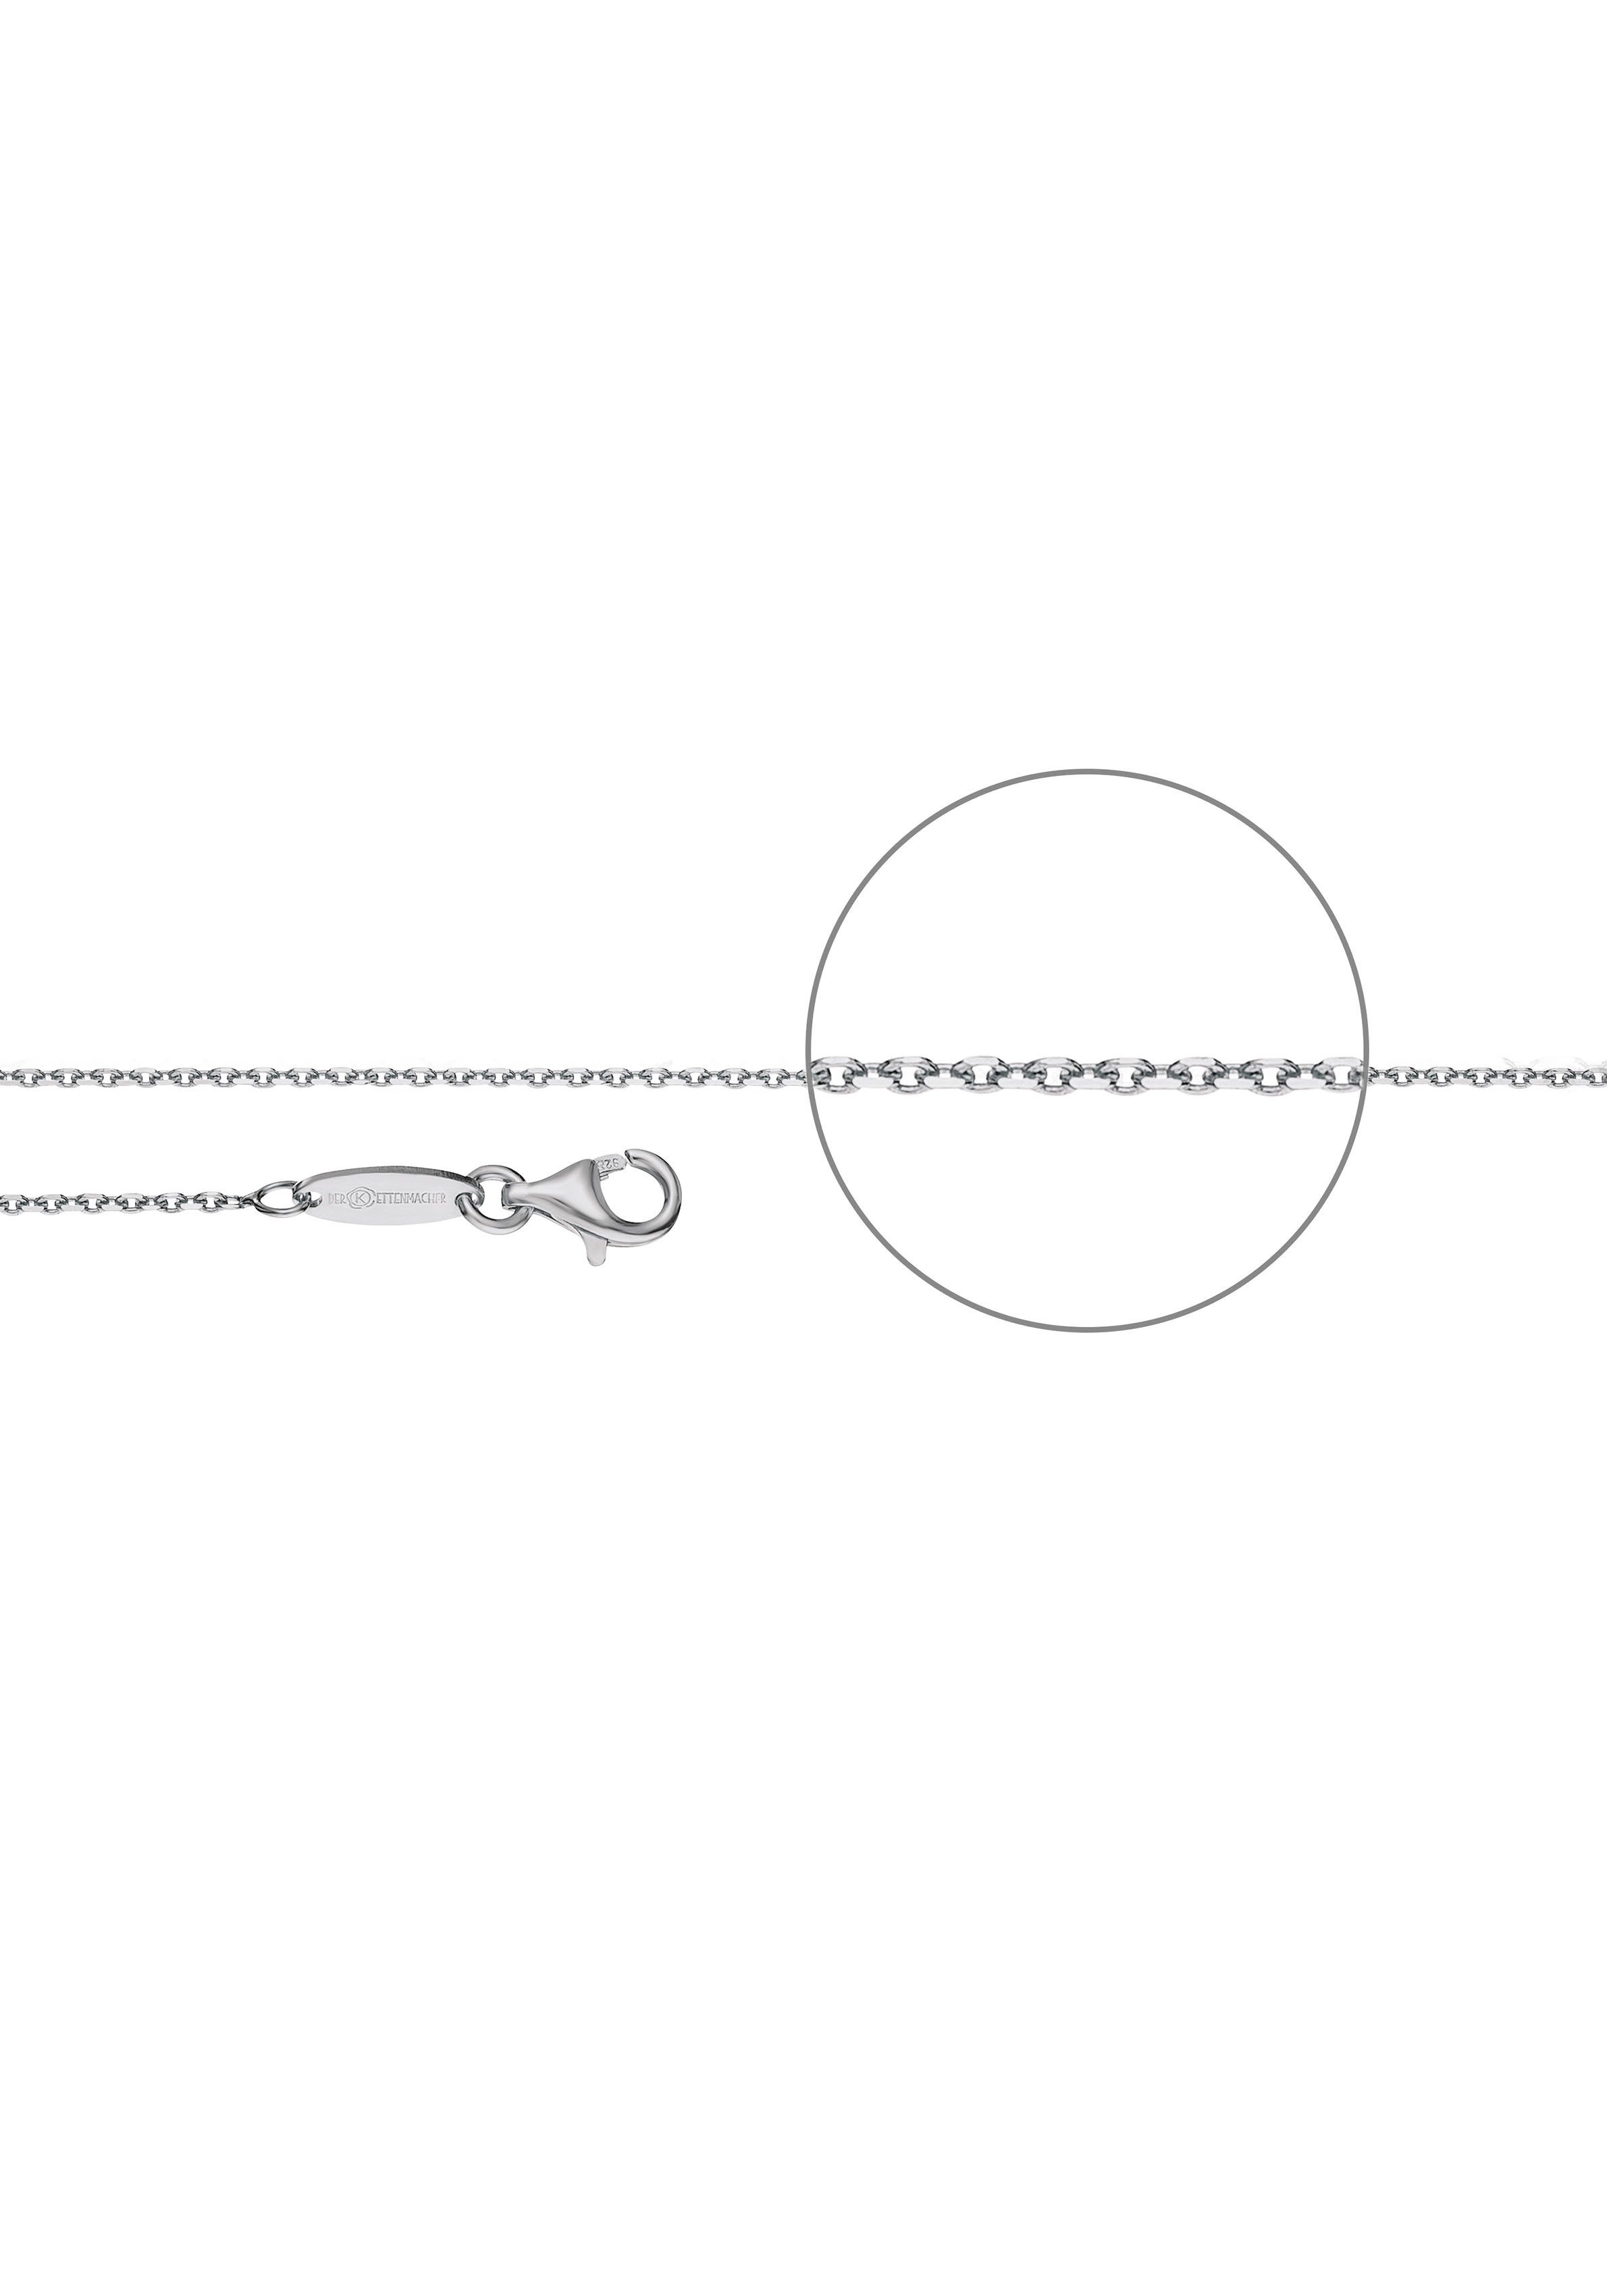 Der Kettenmacher Silberkette Ankerkette diamantiert, ca. 1,2 mm breit, A3-G, A3-S silberfarben | Silberketten